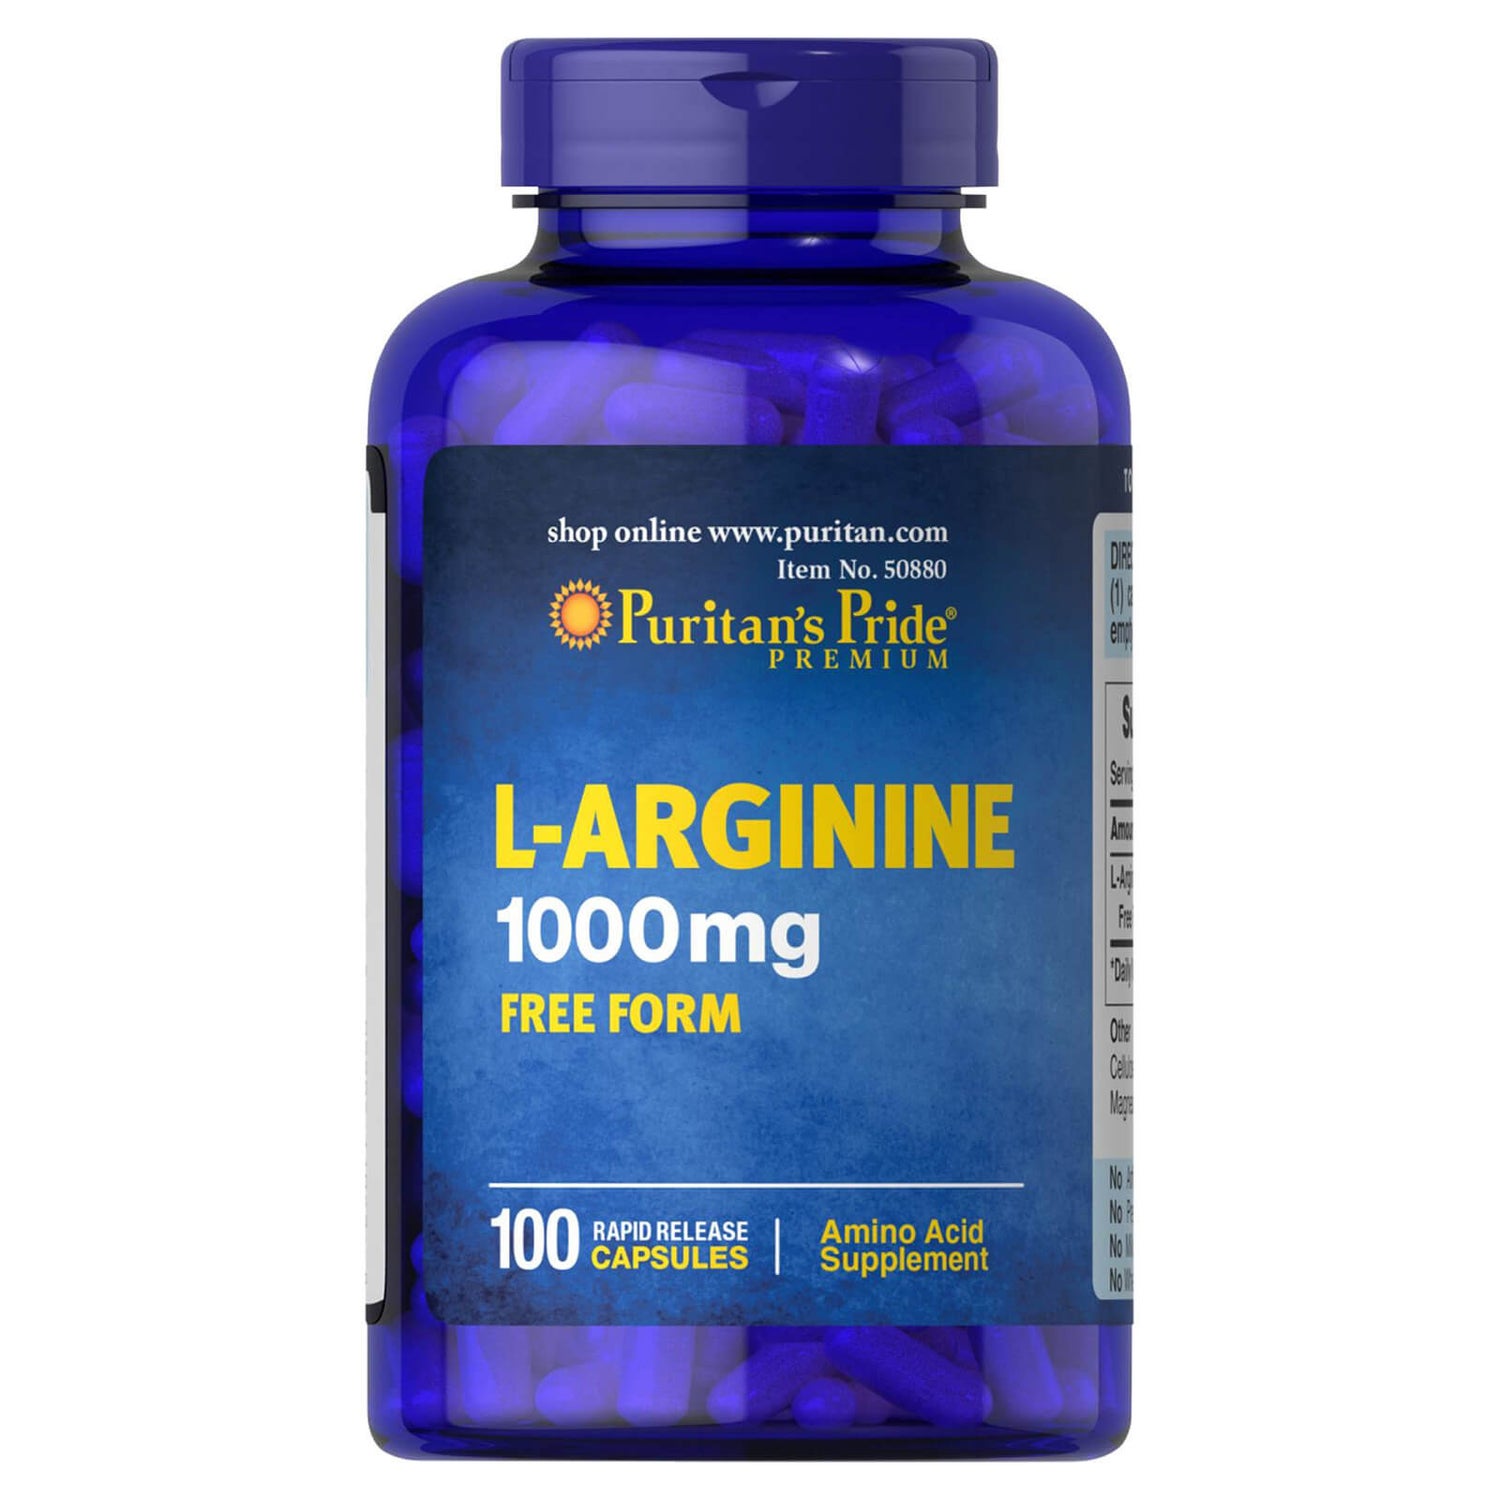 Puritan's Pride L-Arginine 1000mg - 100 Capsules